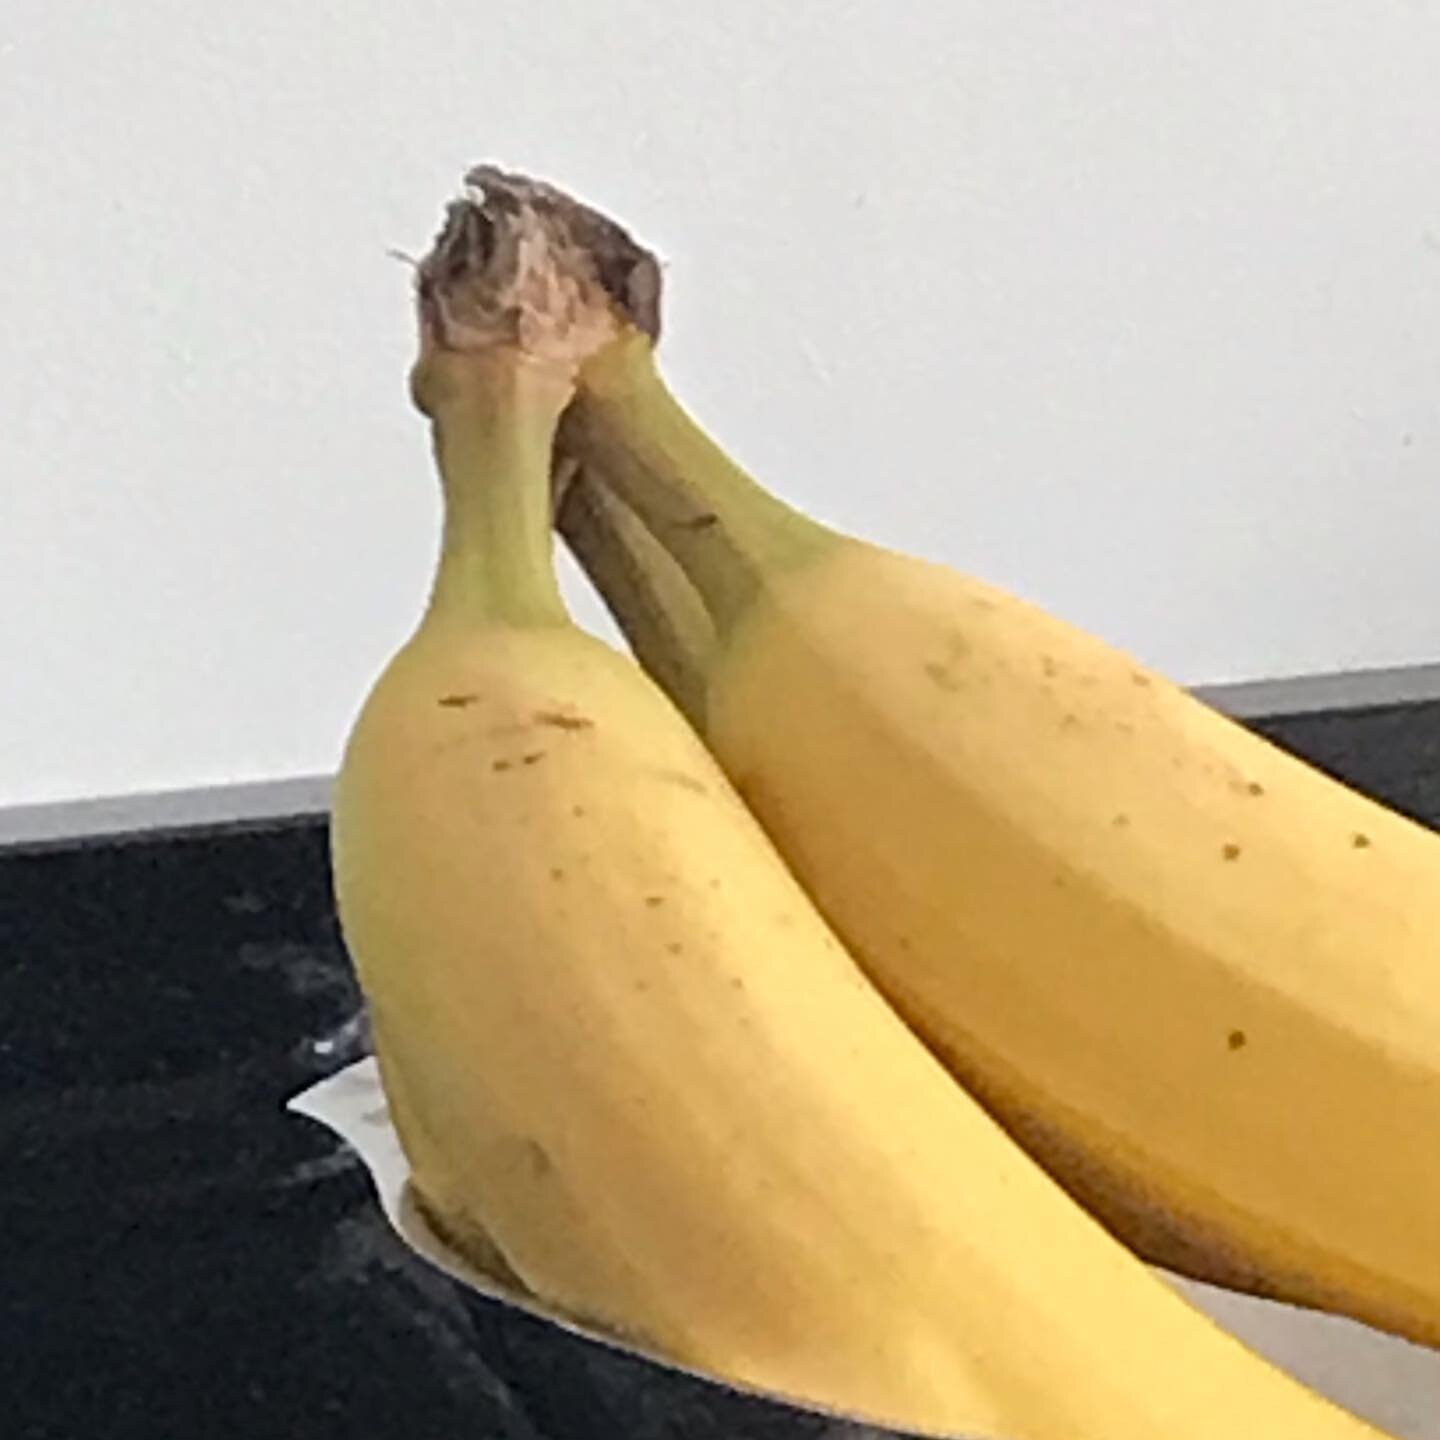 Banana face